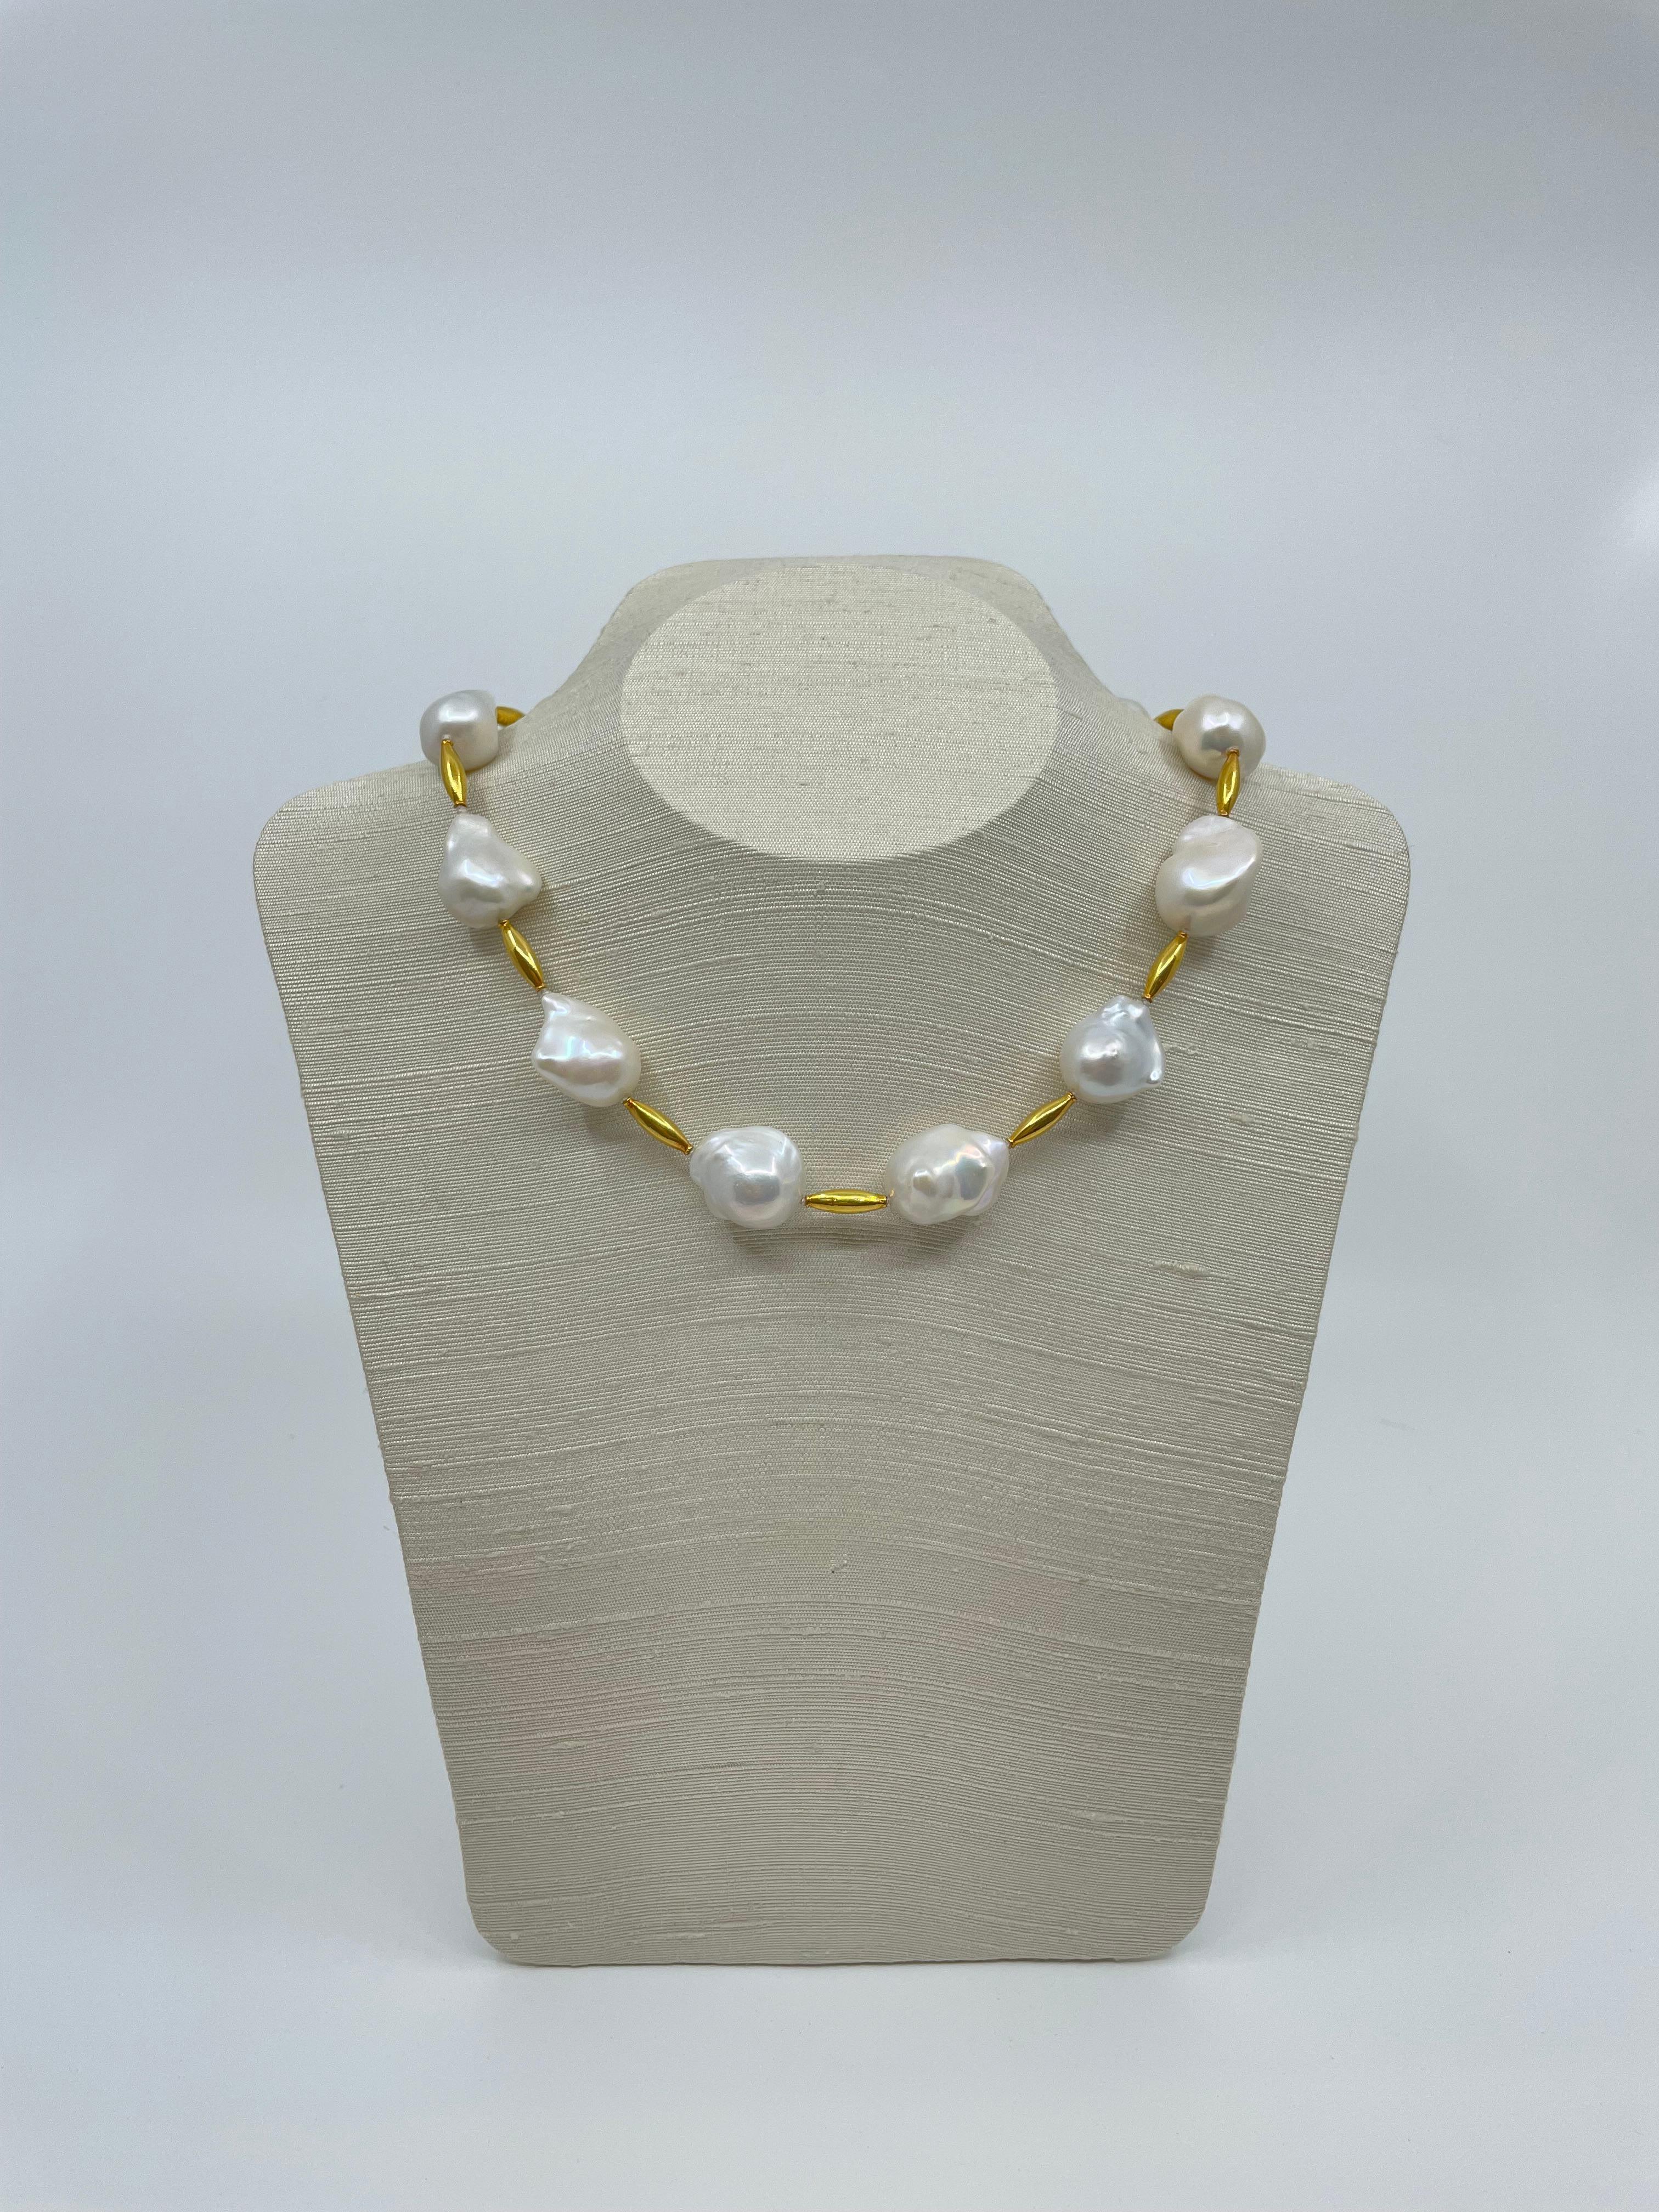 Die organisch geformten Barockperlen werden von röhrenförmigen Perlen aus 18 Karat Gold unterbrochen und mit einem Knebelverschluss aus 18 Karat Gold verschlossen. Die Perlen sind glänzend und diese atemberaubende Halskette mit einer Länge von 43,8